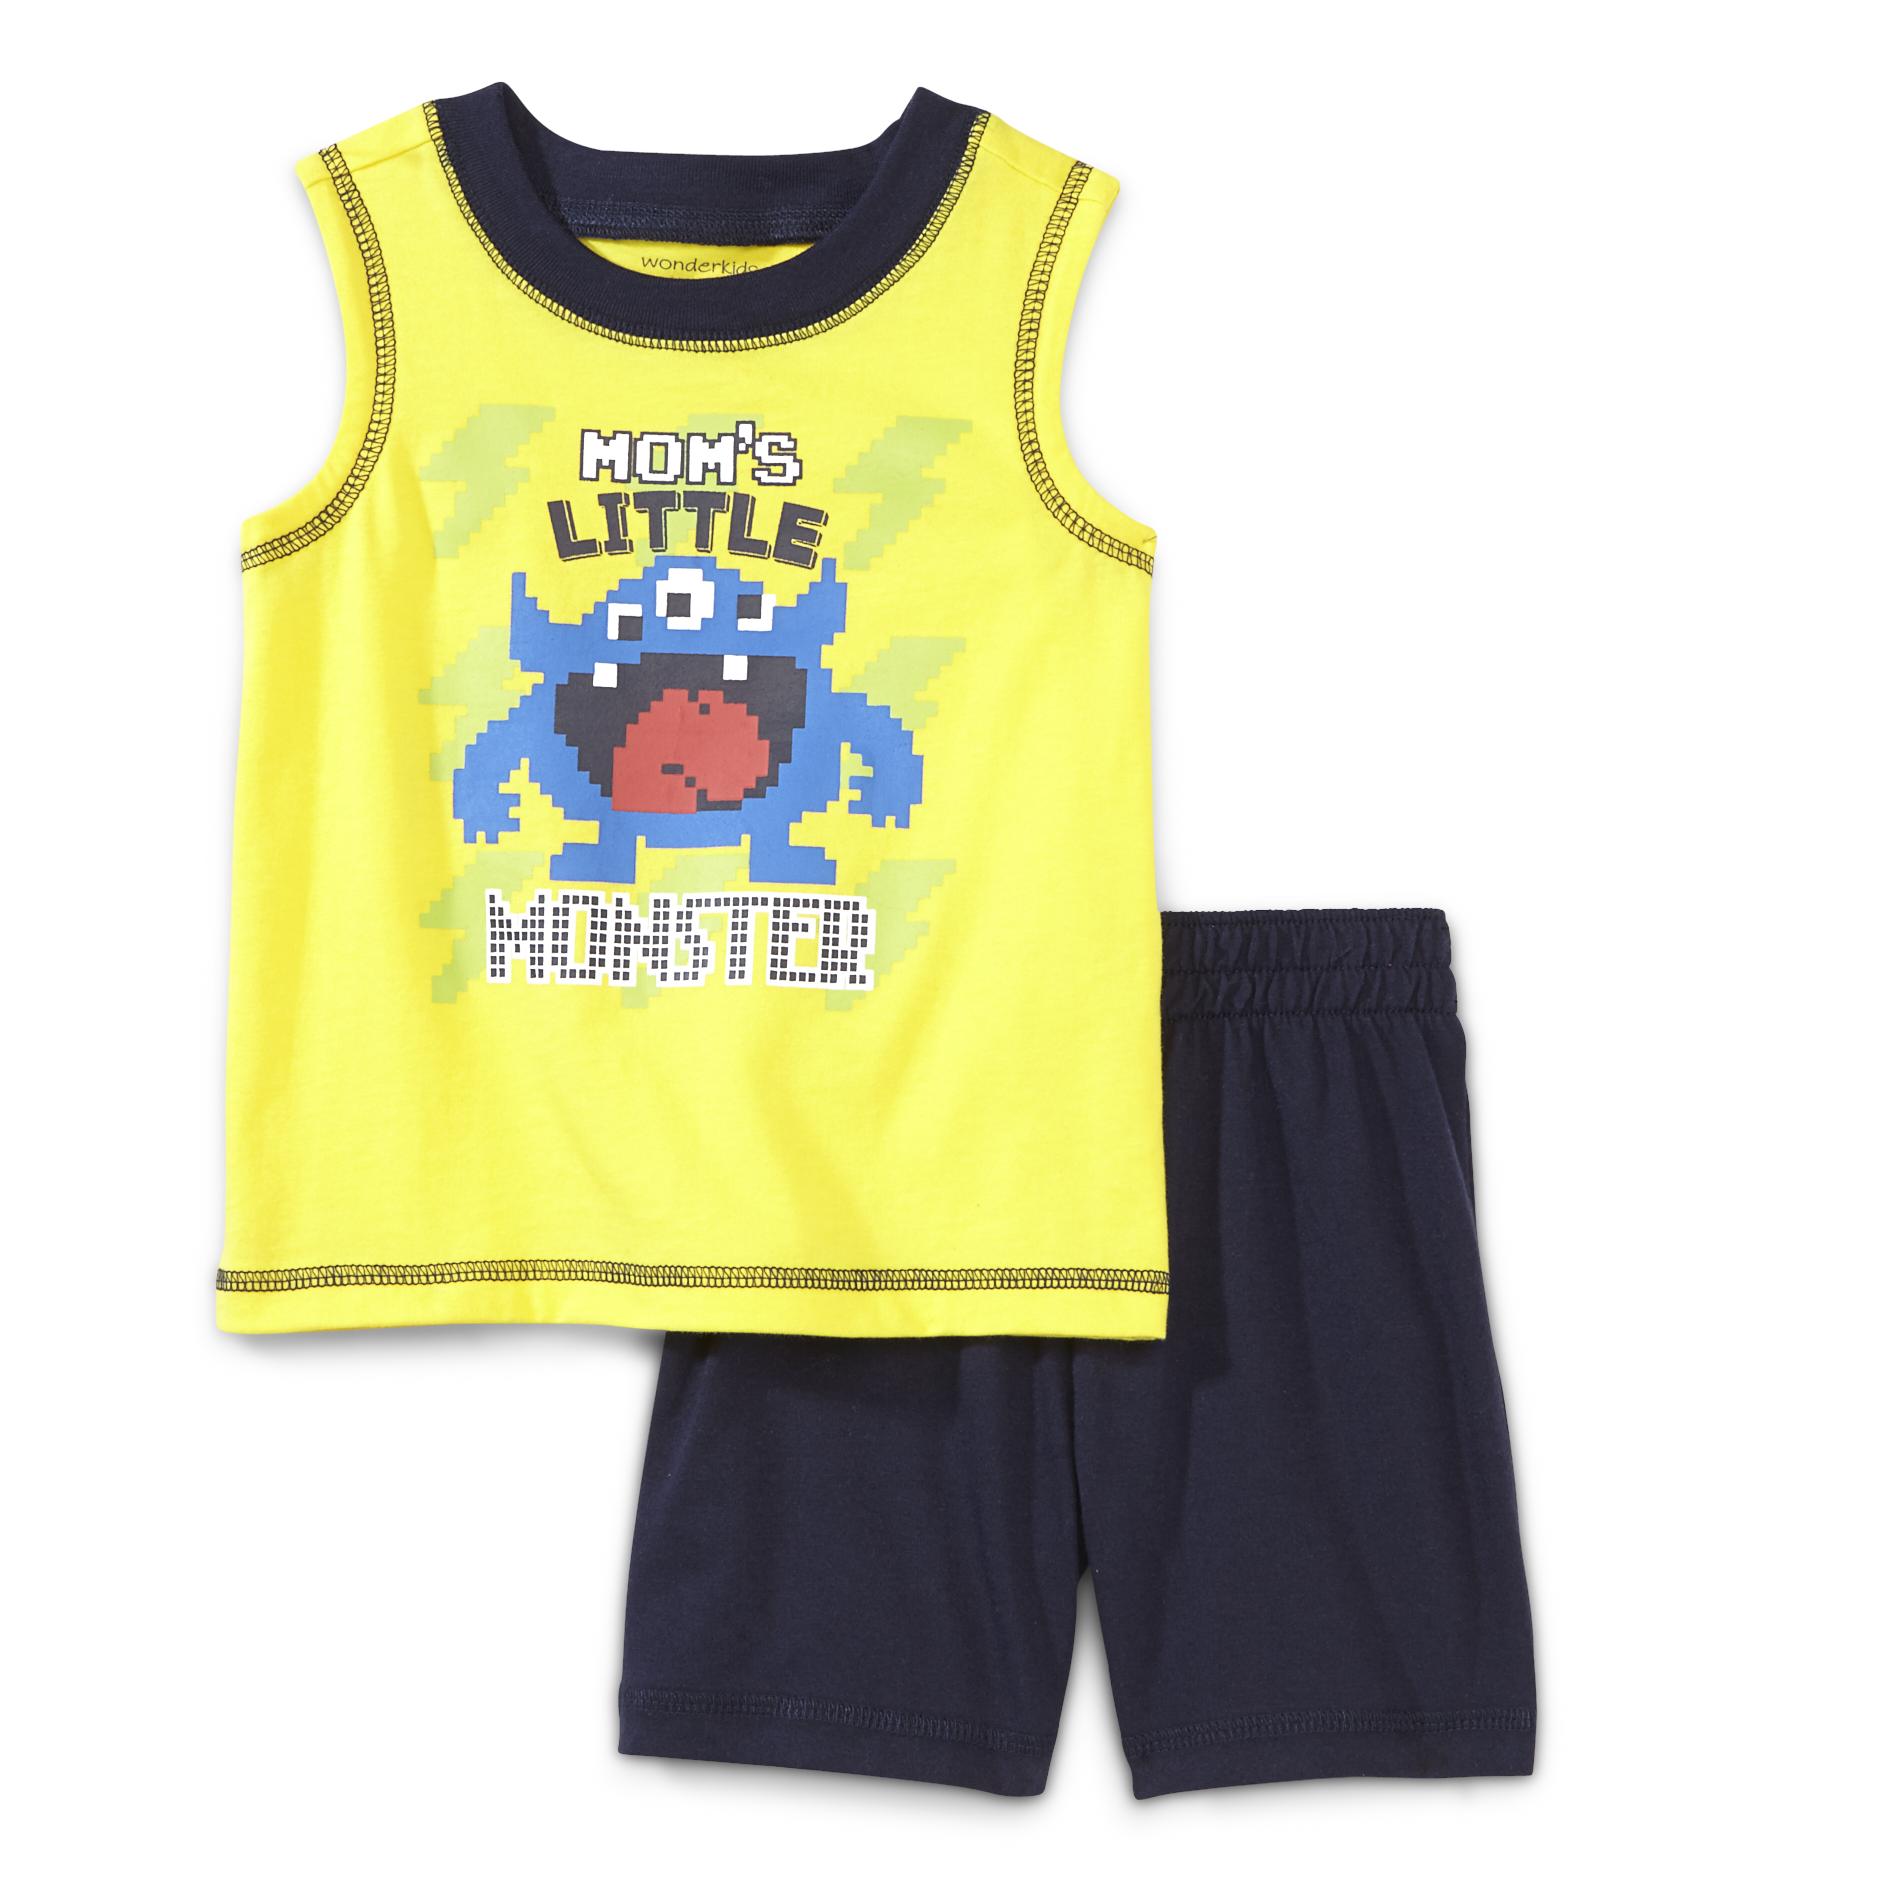 WonderKids Infant & Toddler Boy's Sleeveless Shirt & Shorts - Mom's Little Monster